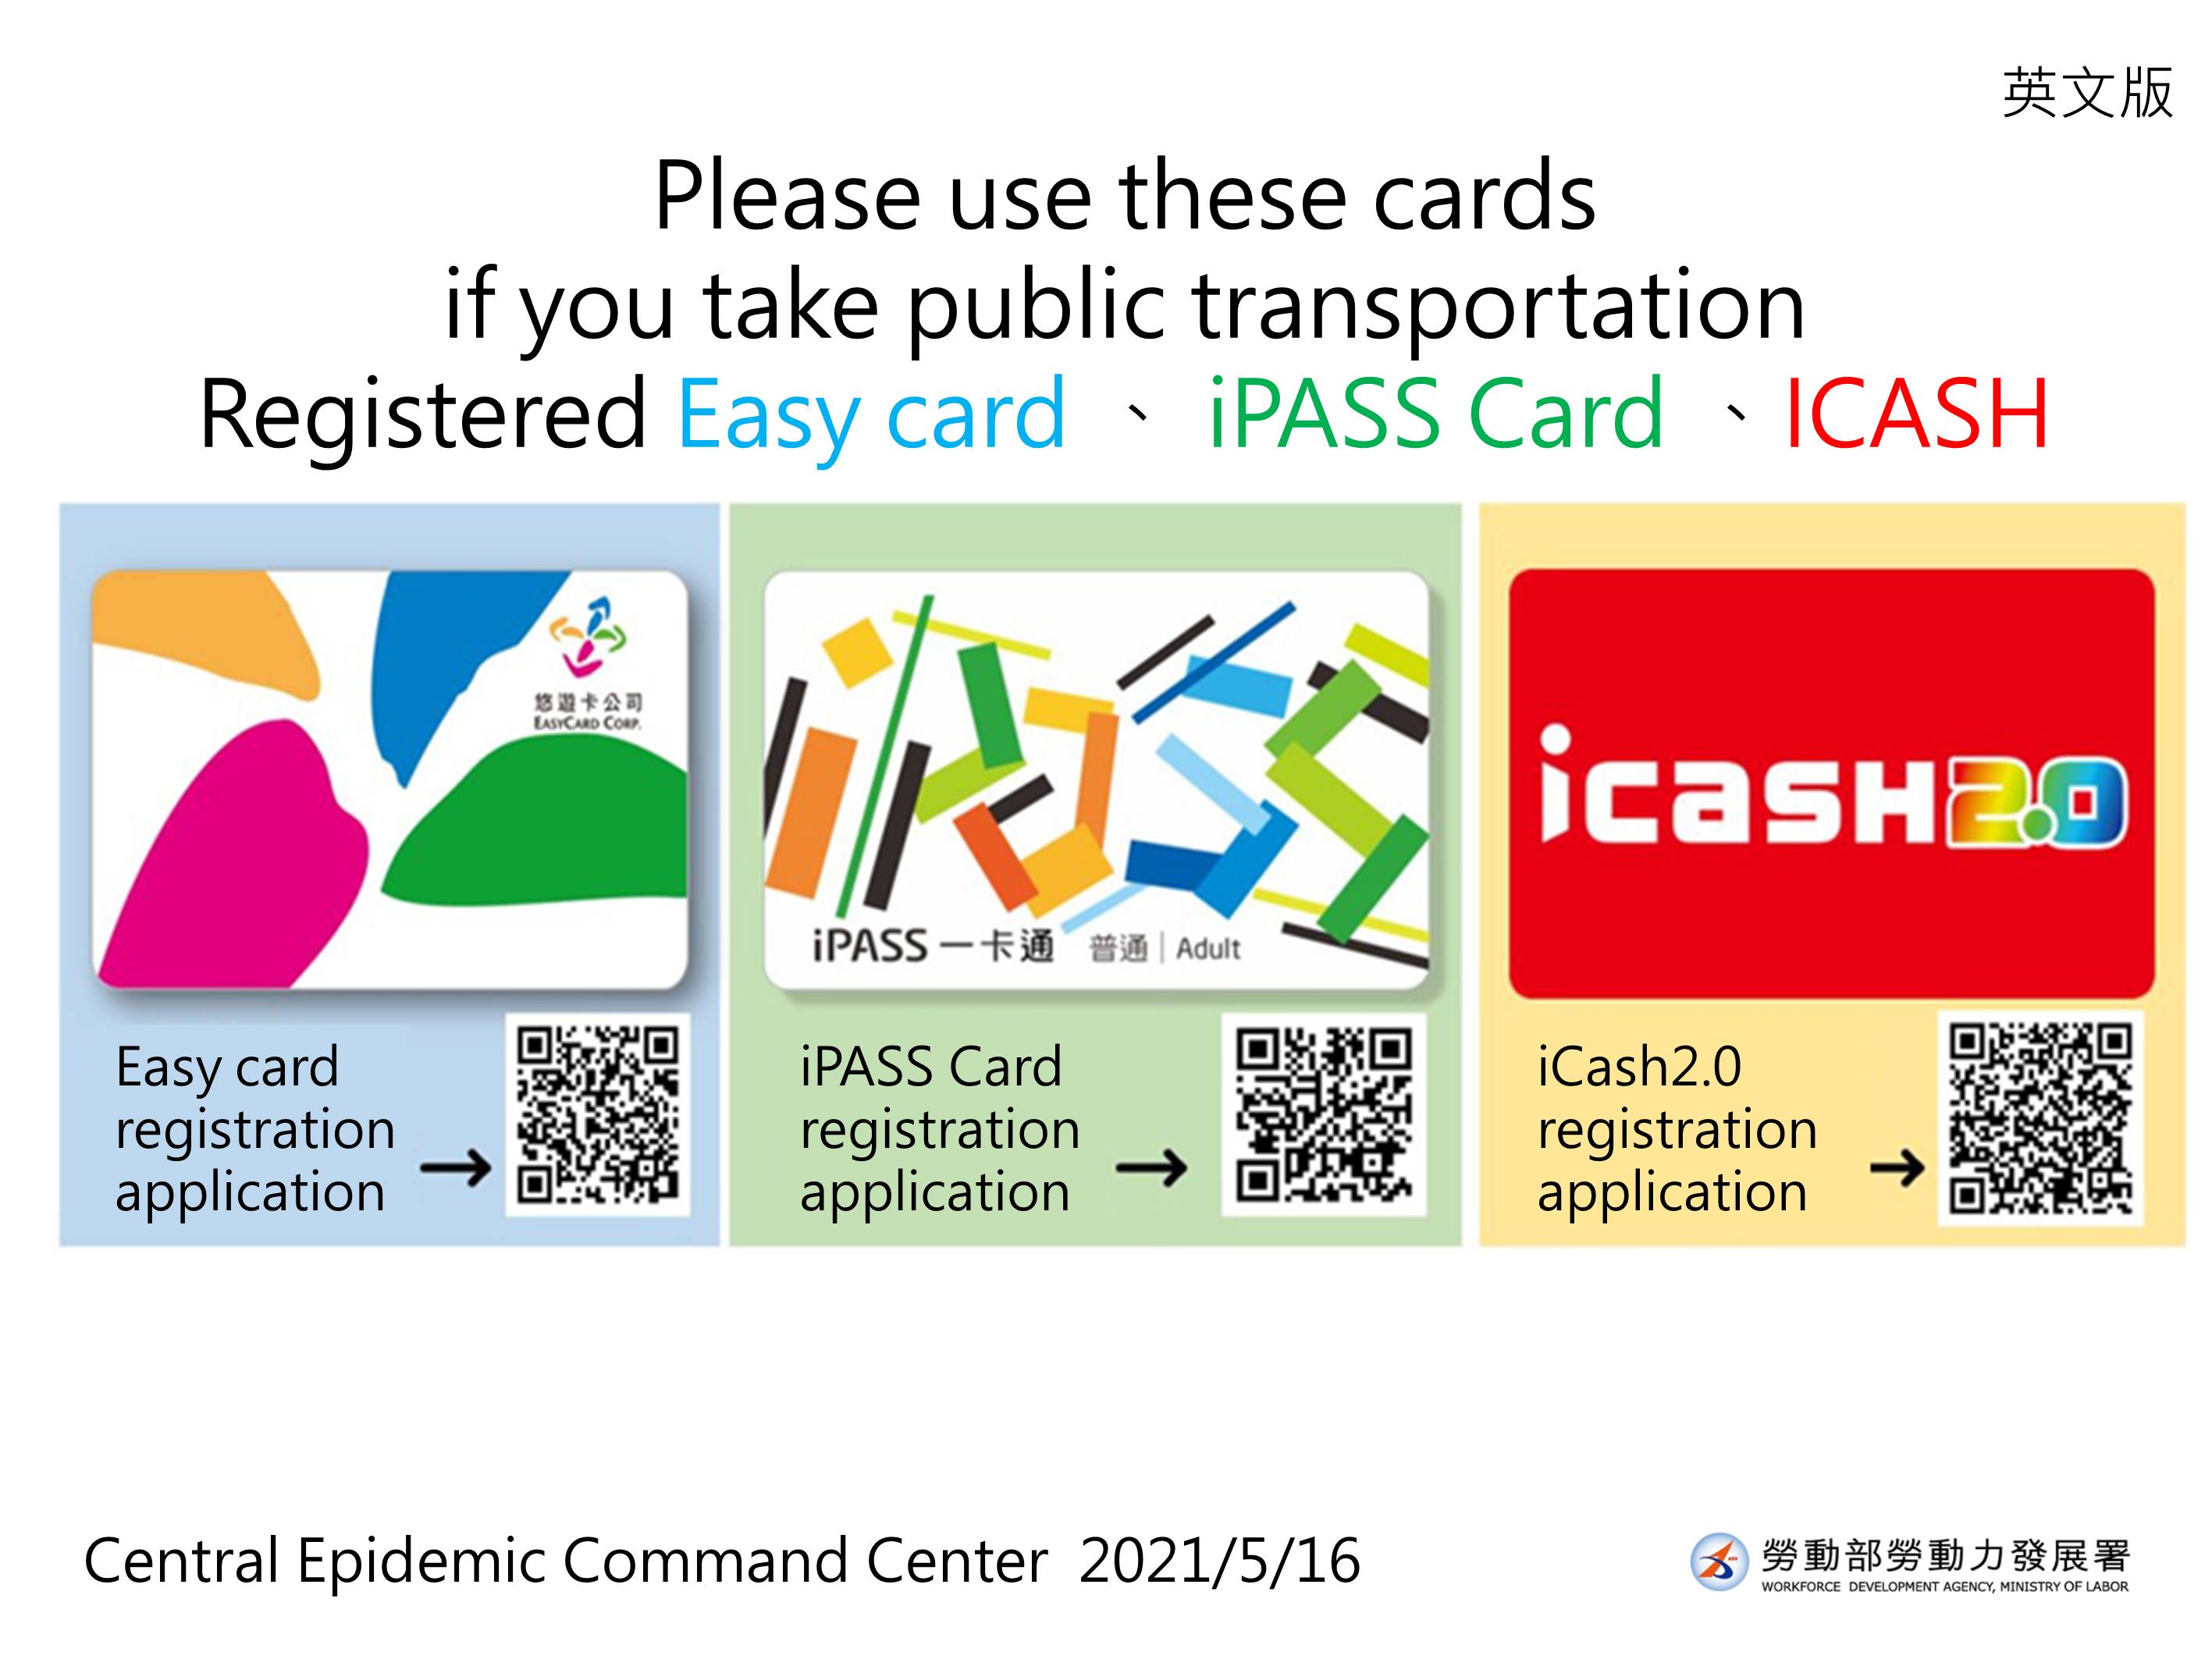 搭乘大眾運輸請多利用已記名之悠遊卡等電子票證-英文.JPG